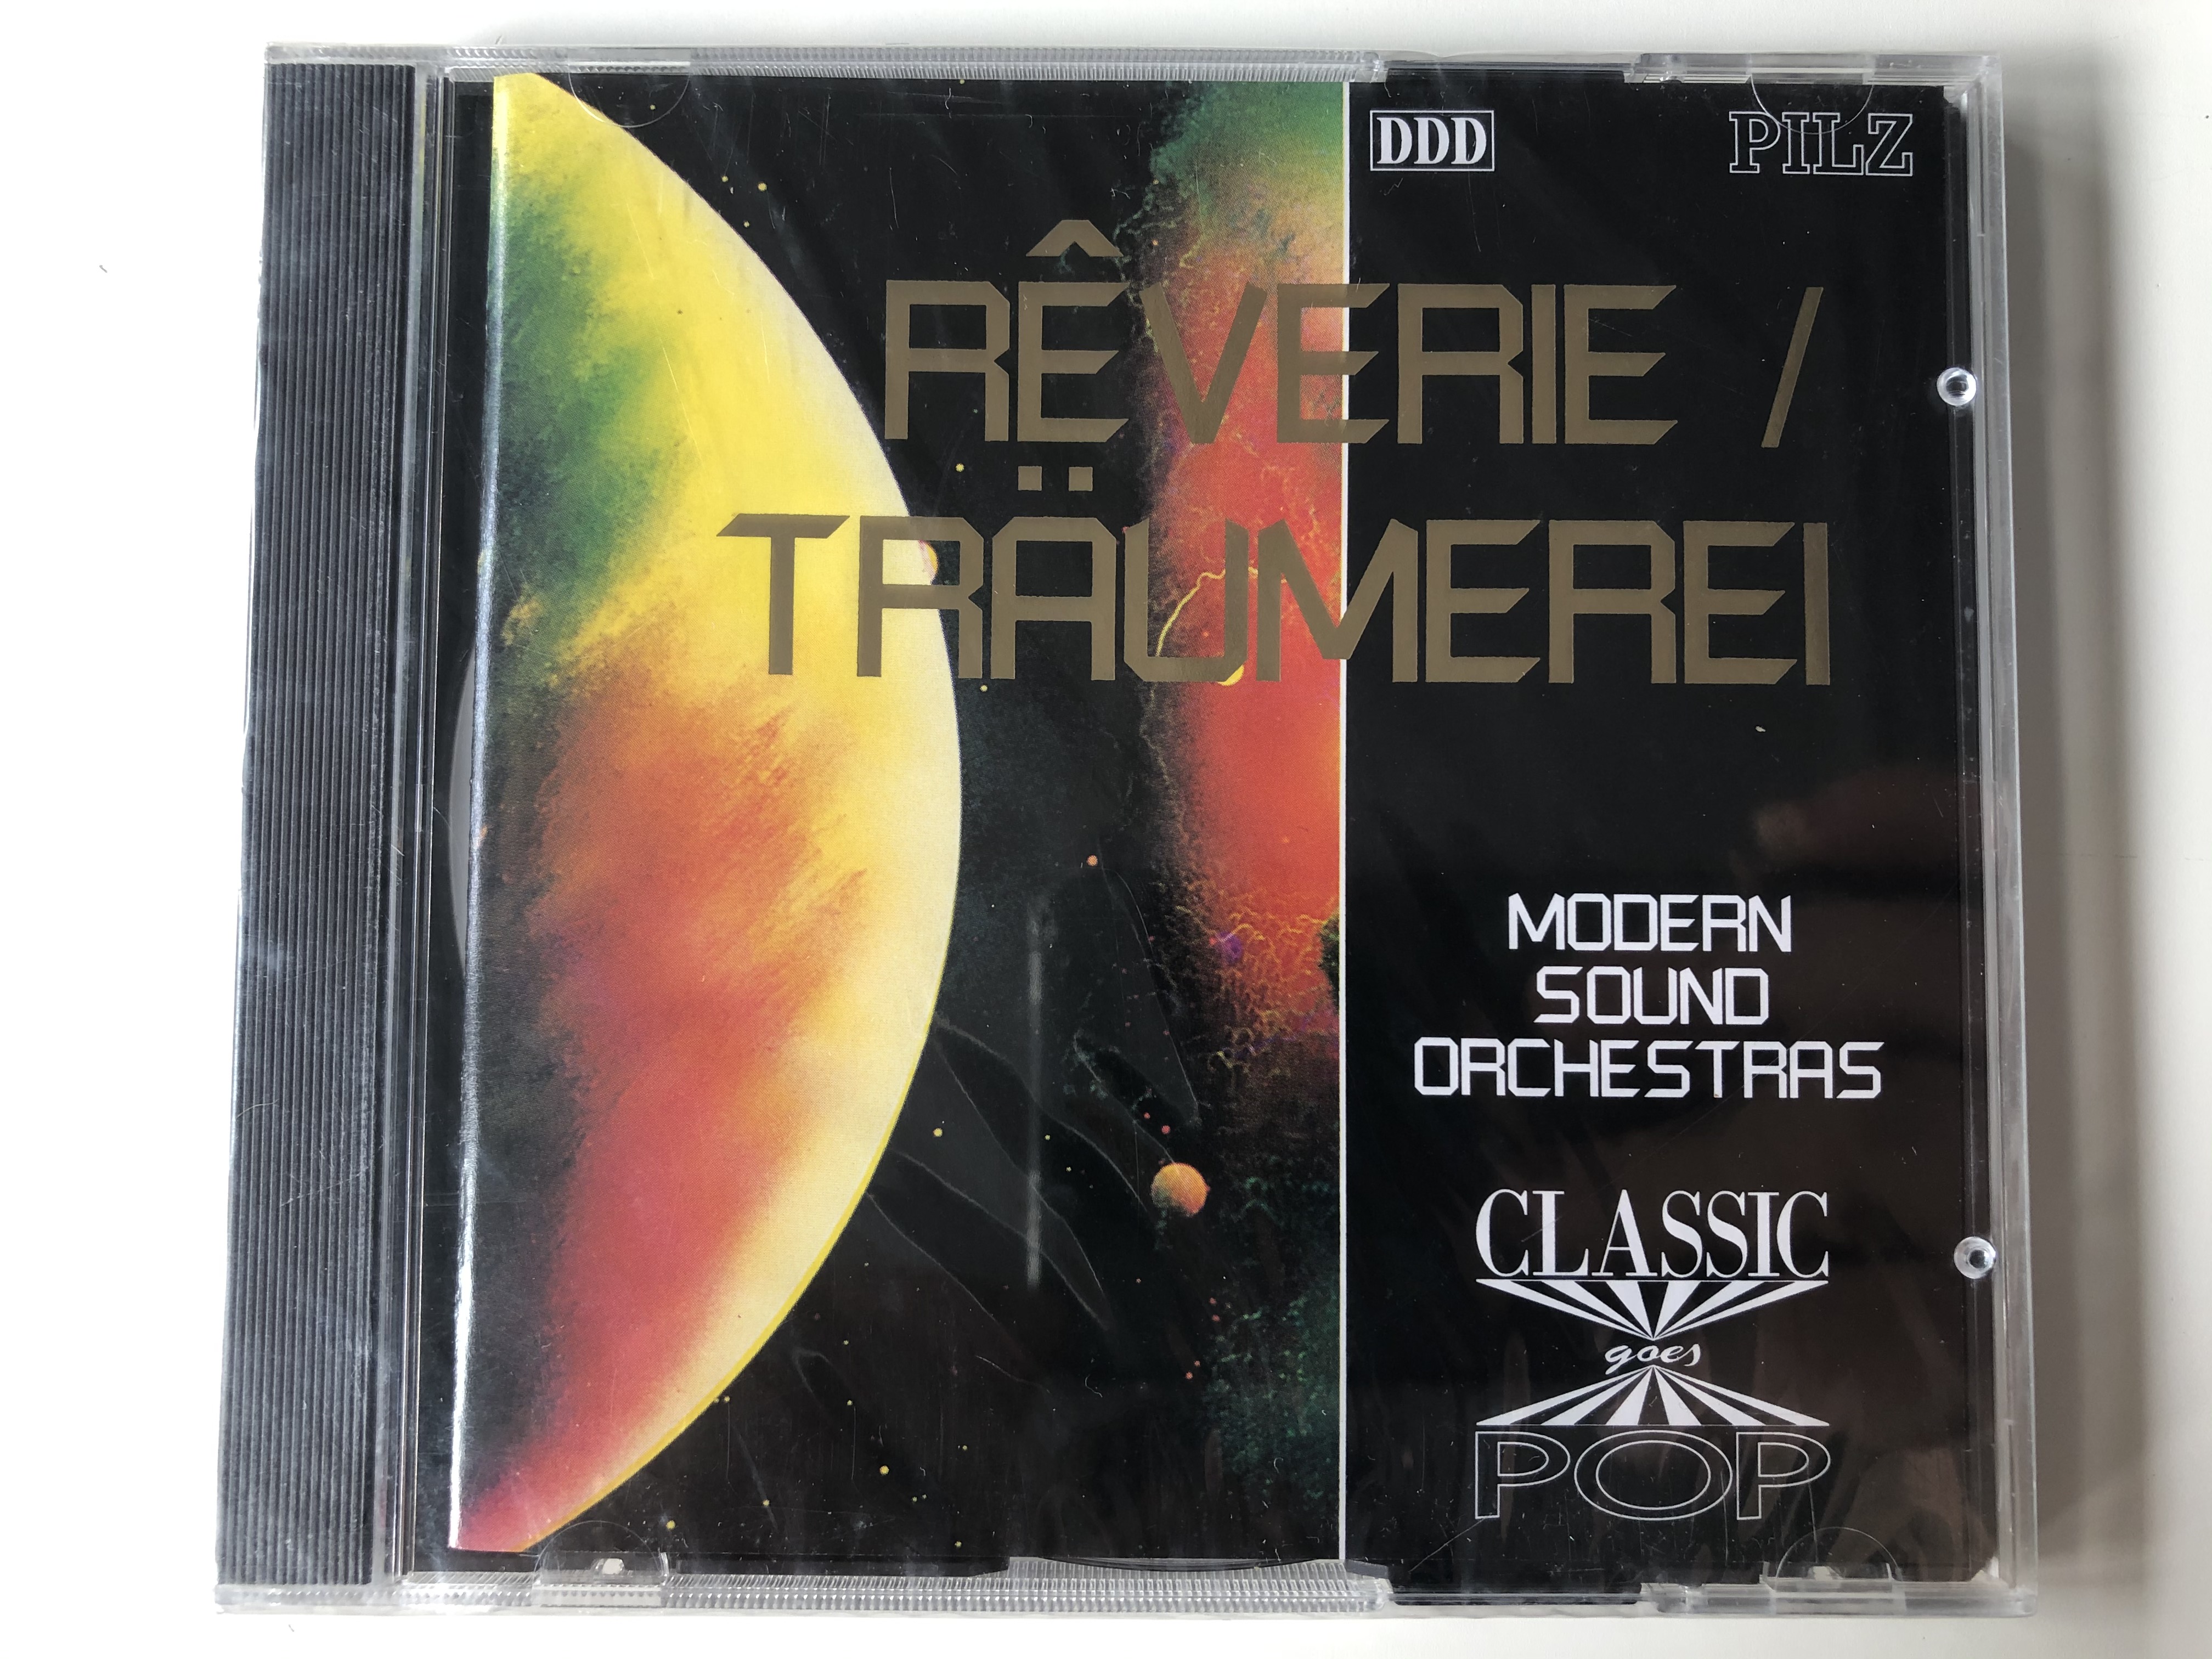 r-verietr-umerei-modern-sound-orchestras-classic-goes-pop-pilz-audio-cd-1992-44-5846-2-1-.jpg